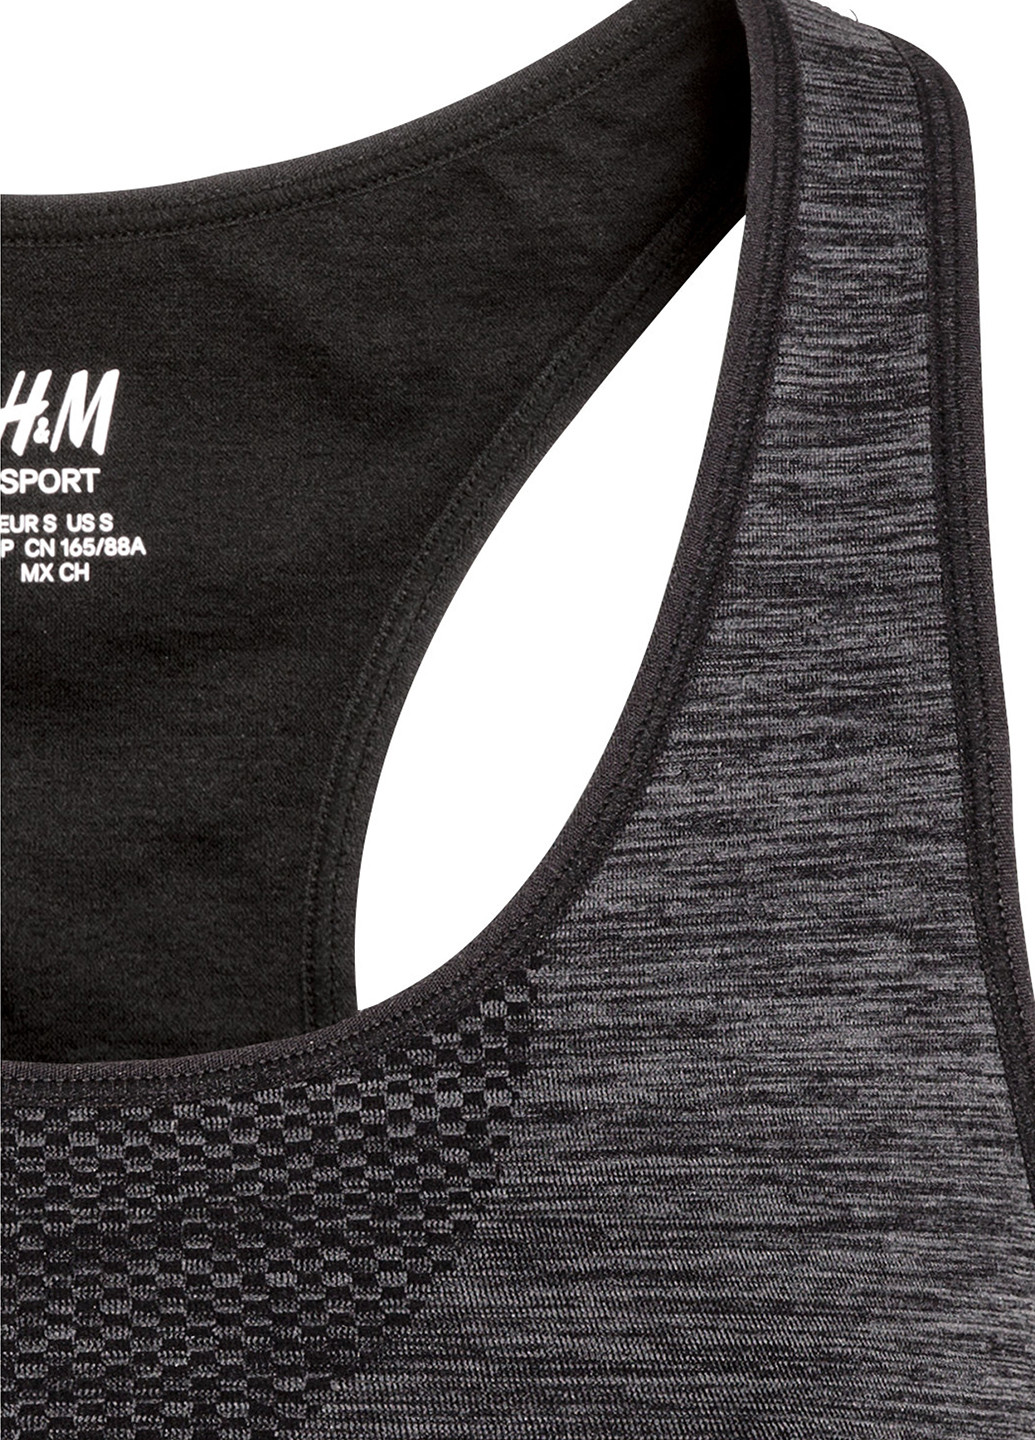 Топ H&M меланж тёмно-серый спортивный полиамид